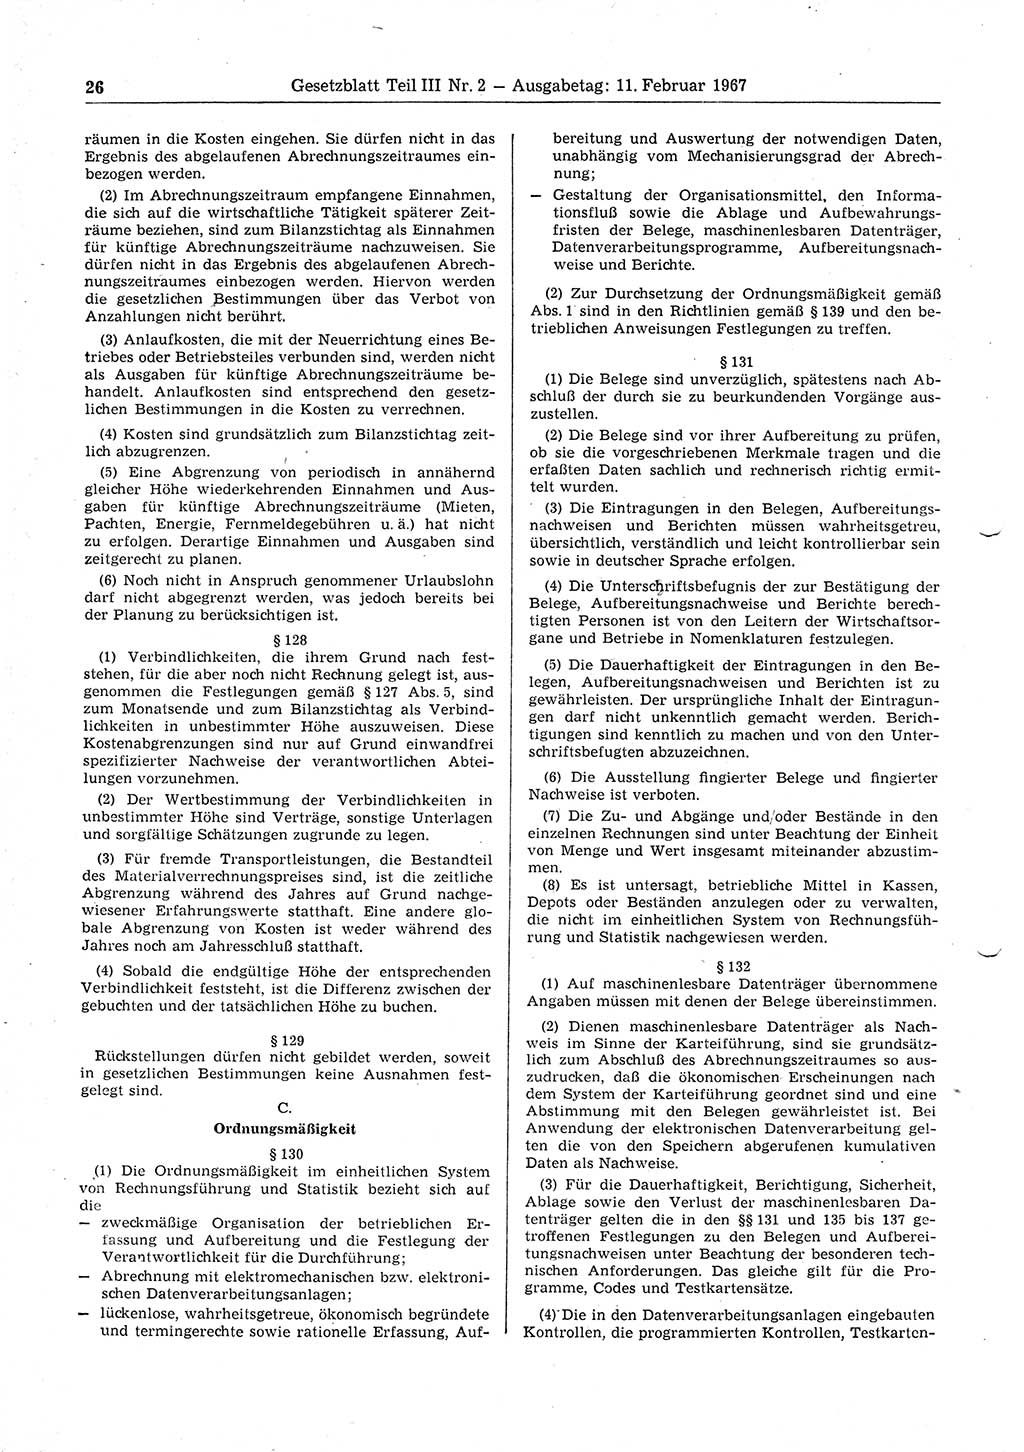 Gesetzblatt (GBl.) der Deutschen Demokratischen Republik (DDR) Teil ⅠⅠⅠ 1967, Seite 26 (GBl. DDR ⅠⅠⅠ 1967, S. 26)